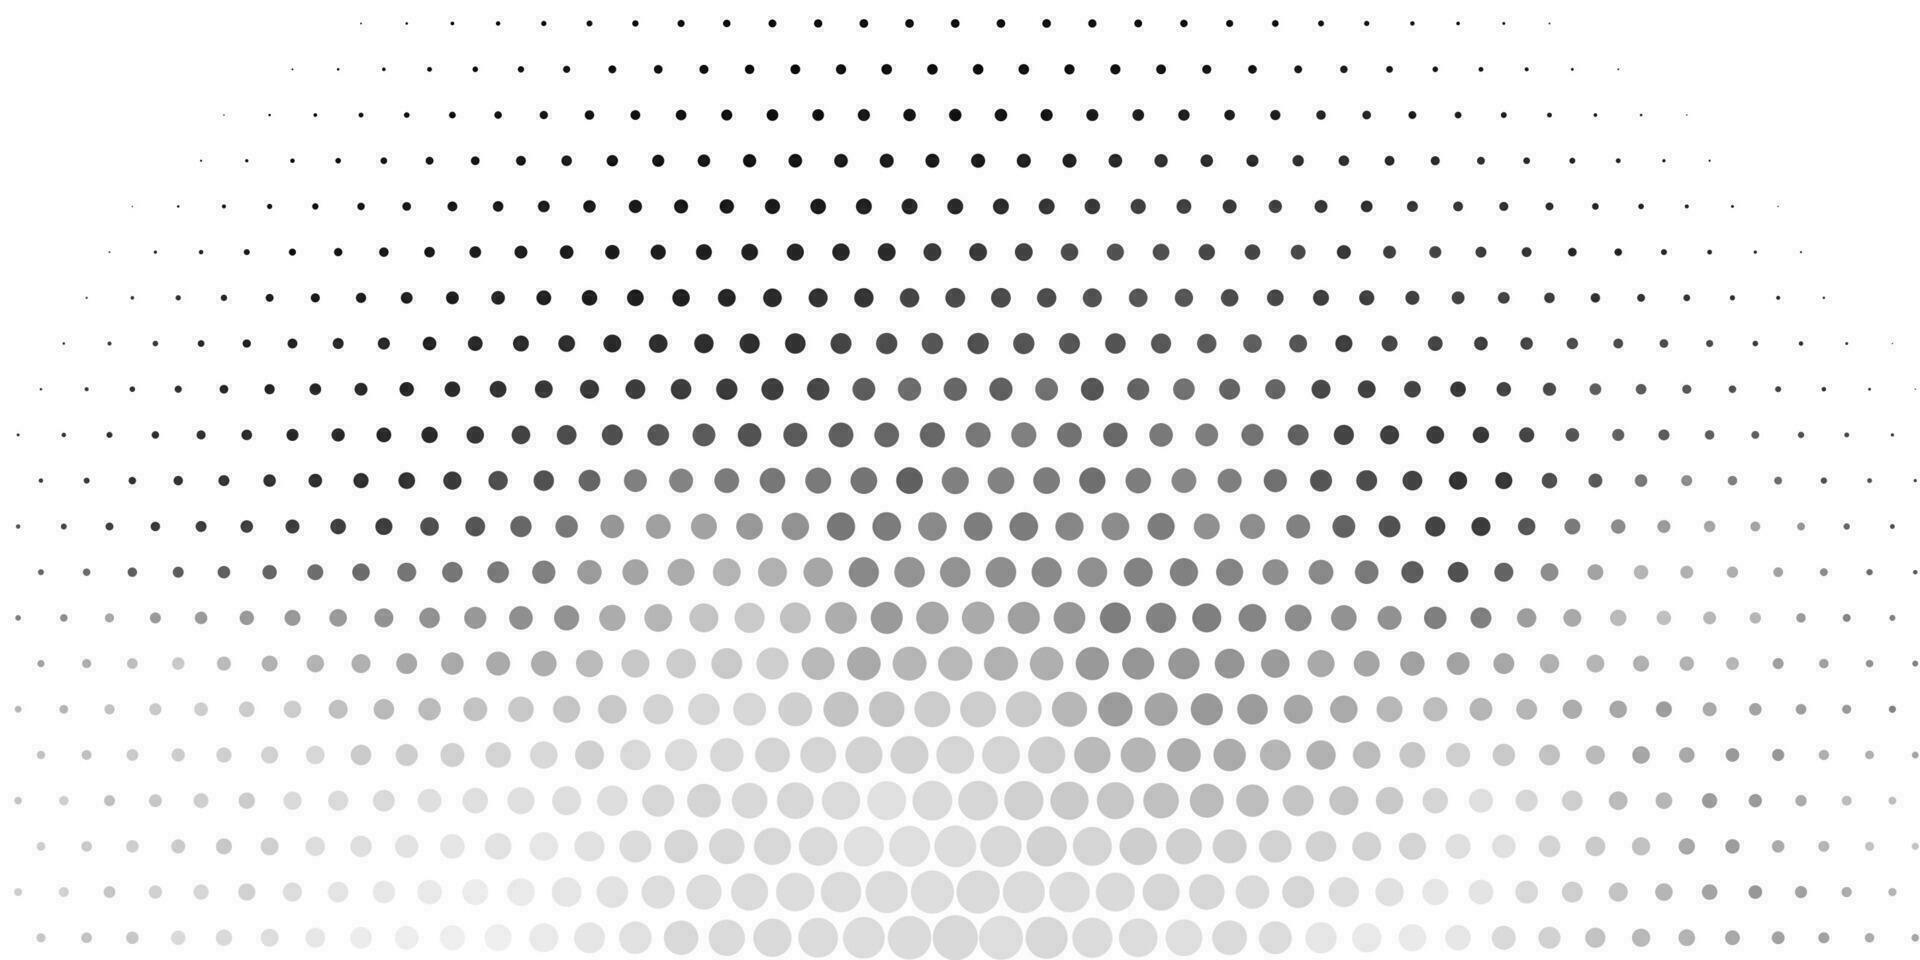 patrón de vector gris claro con esferas.